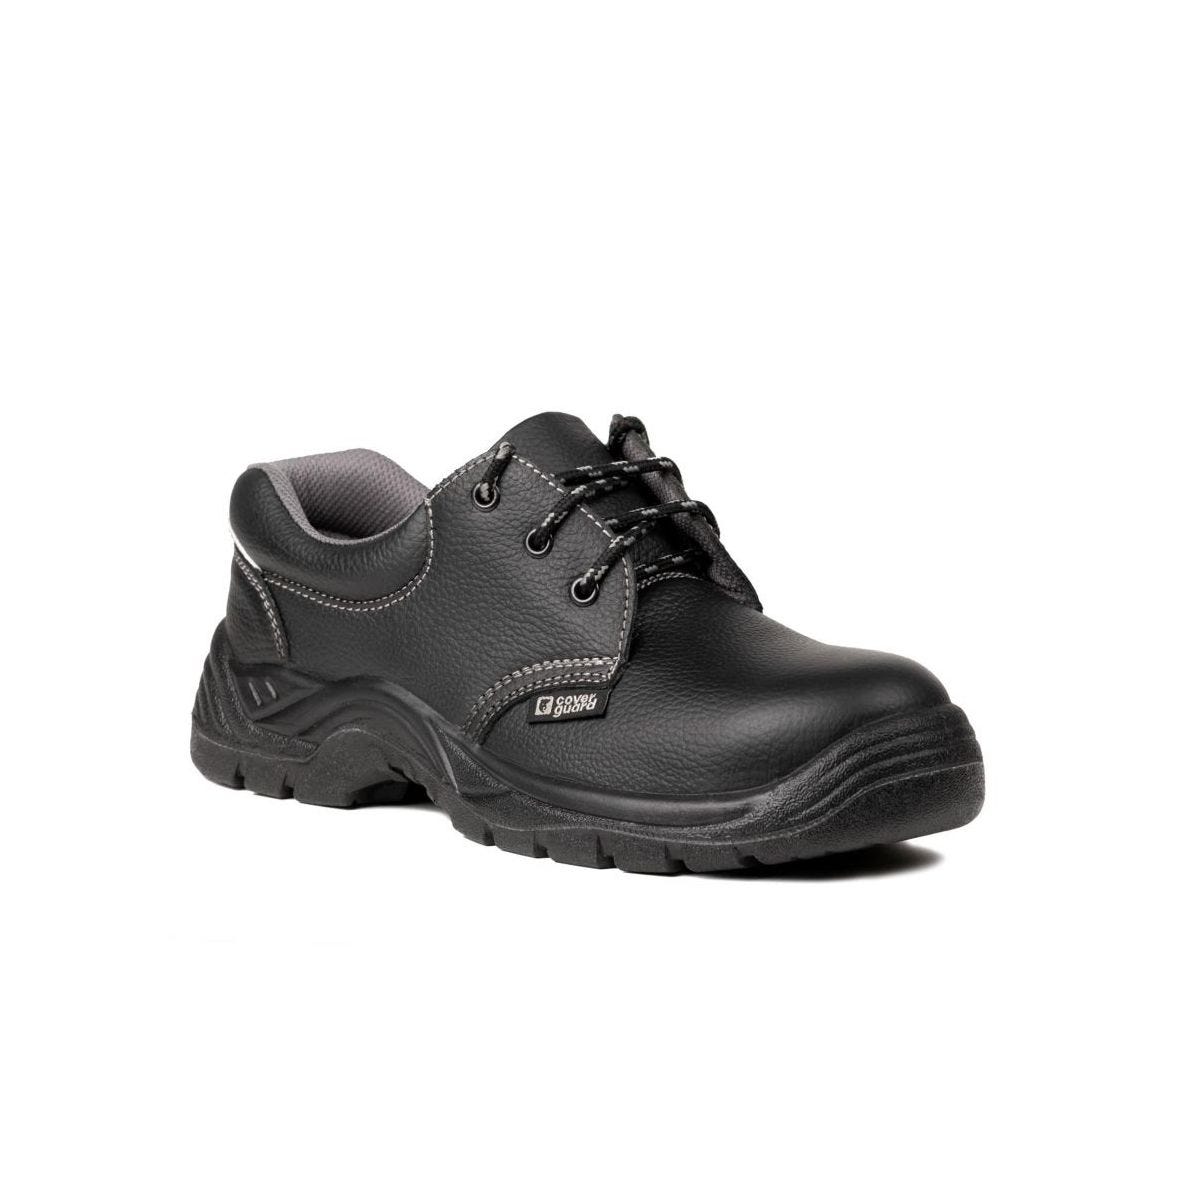 Chaussures de sécurité basses AGATE II S3 Noir - Coverguard - Taille 42 0